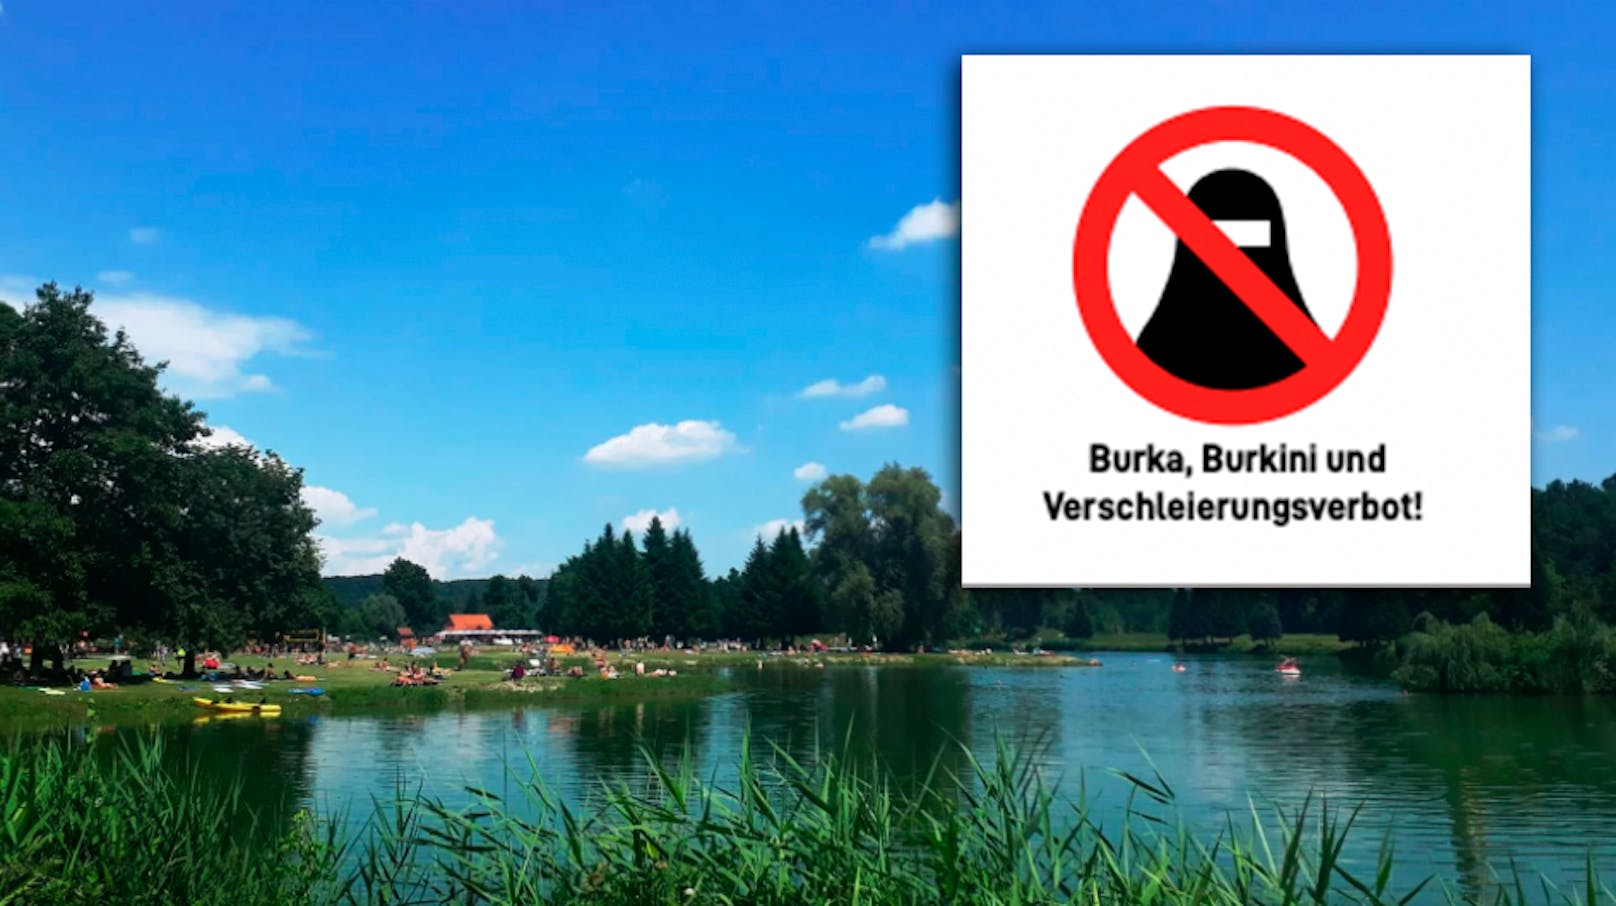 Am Badesee in Wildon (Stmk.) herrschte Burkini-Verbot. Nun schlägt die frühere Hausregel erneut Wellen.